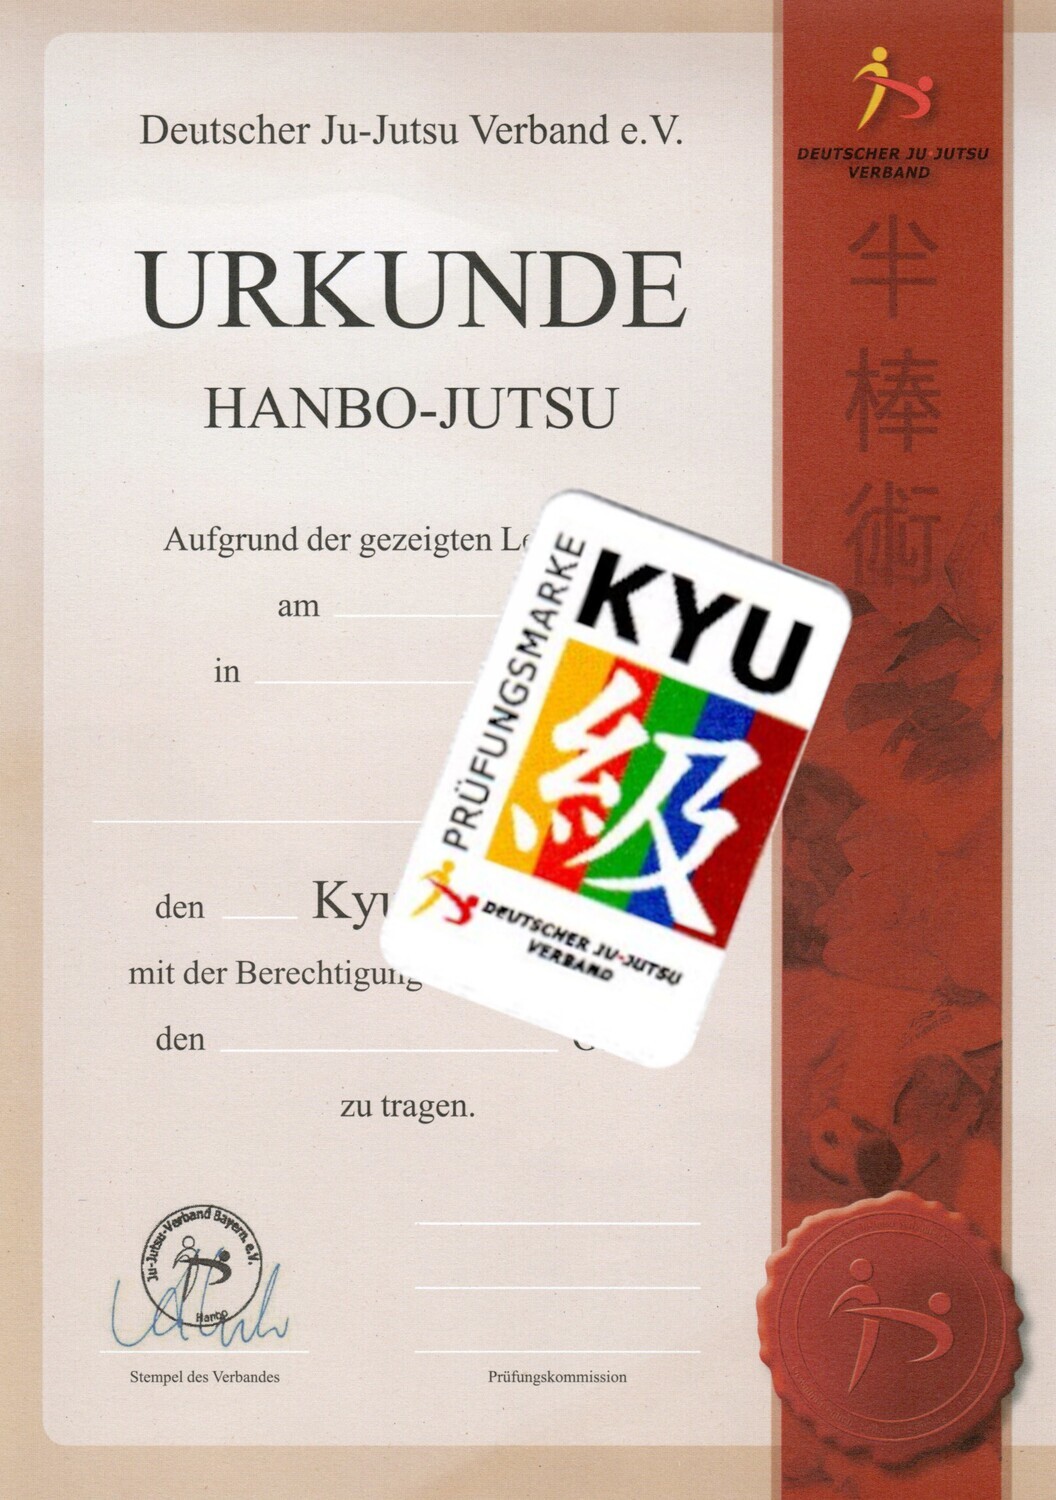 Prüfungsmarke Kyu "Hanbo" incl. Urkunde